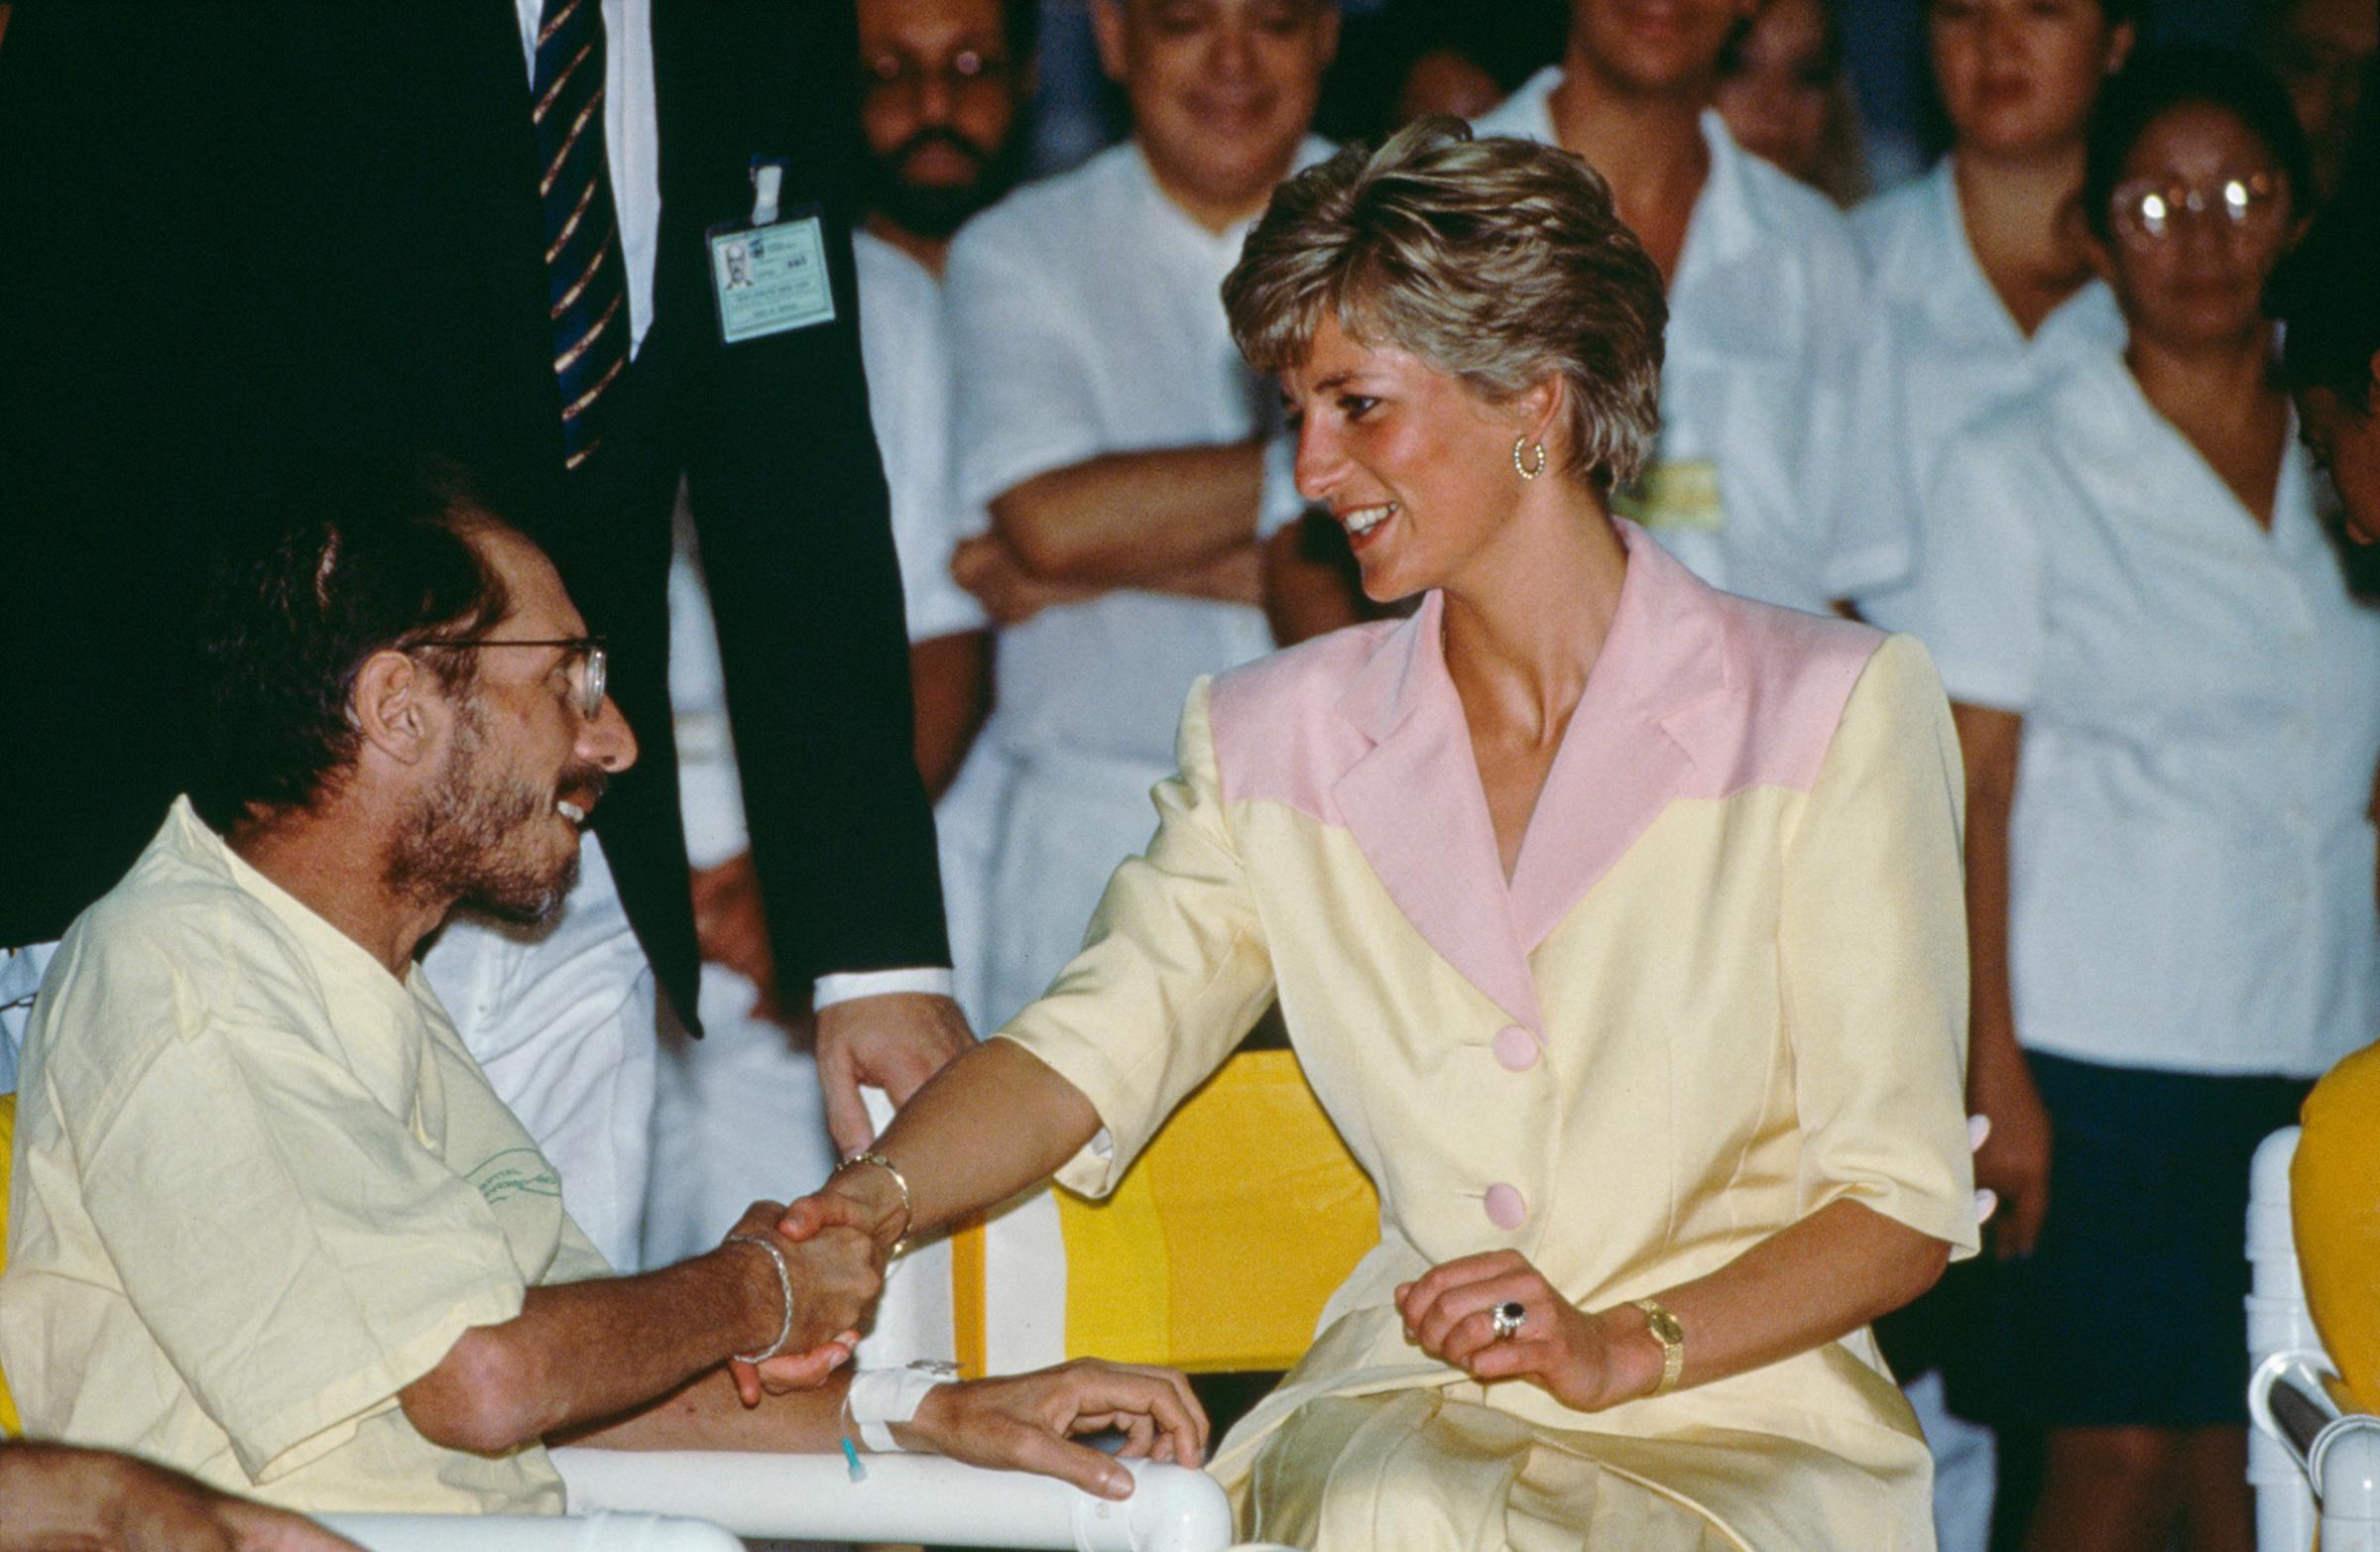 Diana Visits AIDS Patients